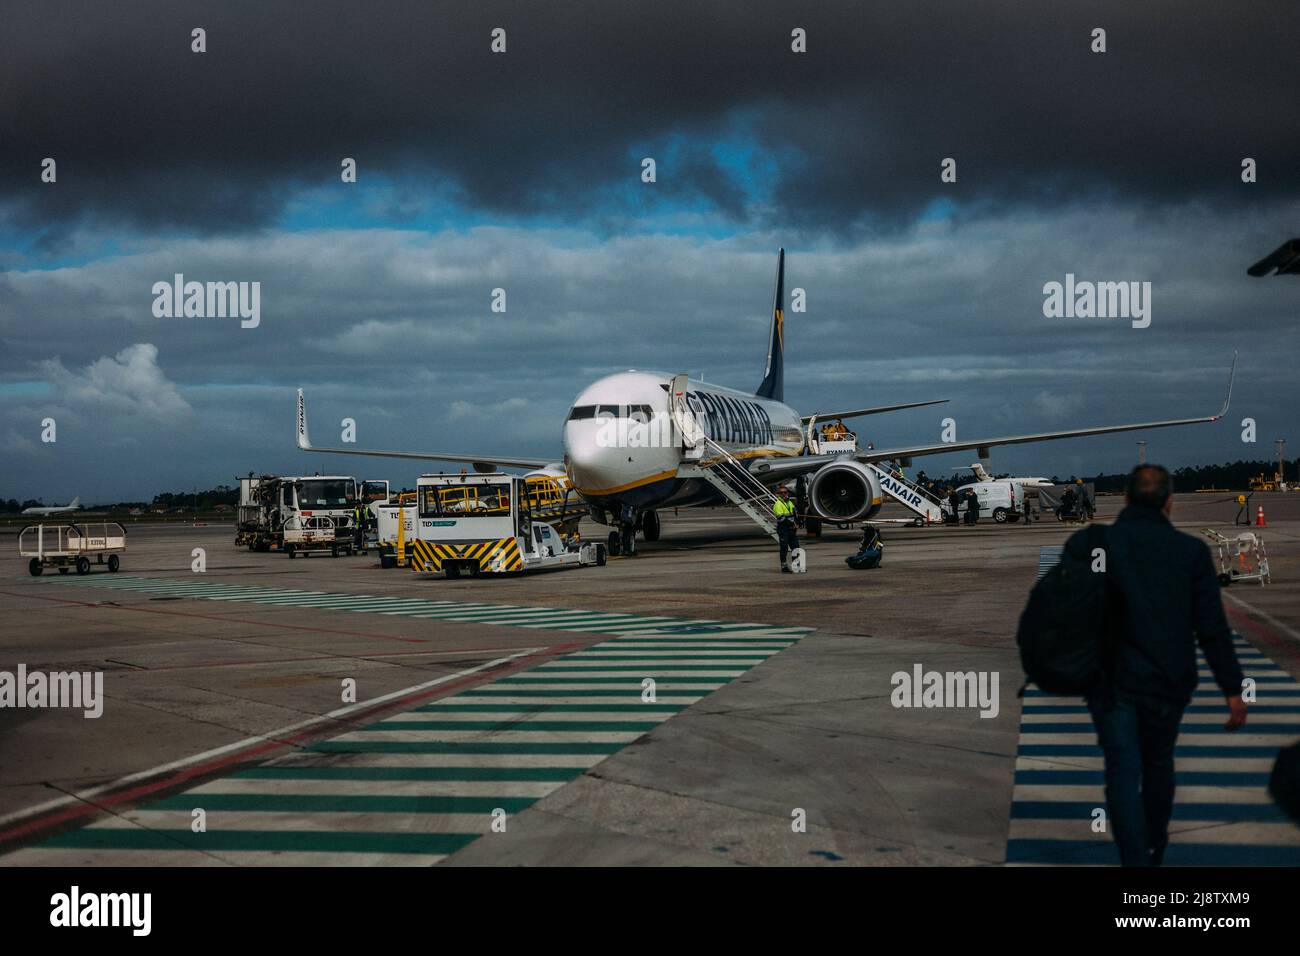 Porto, Portugal, 11.04.22: Flugzeug steht breit, dahinter dunkle Gewitterwolken.   Foto: pressefoto Mika Volkmann Stock Photo